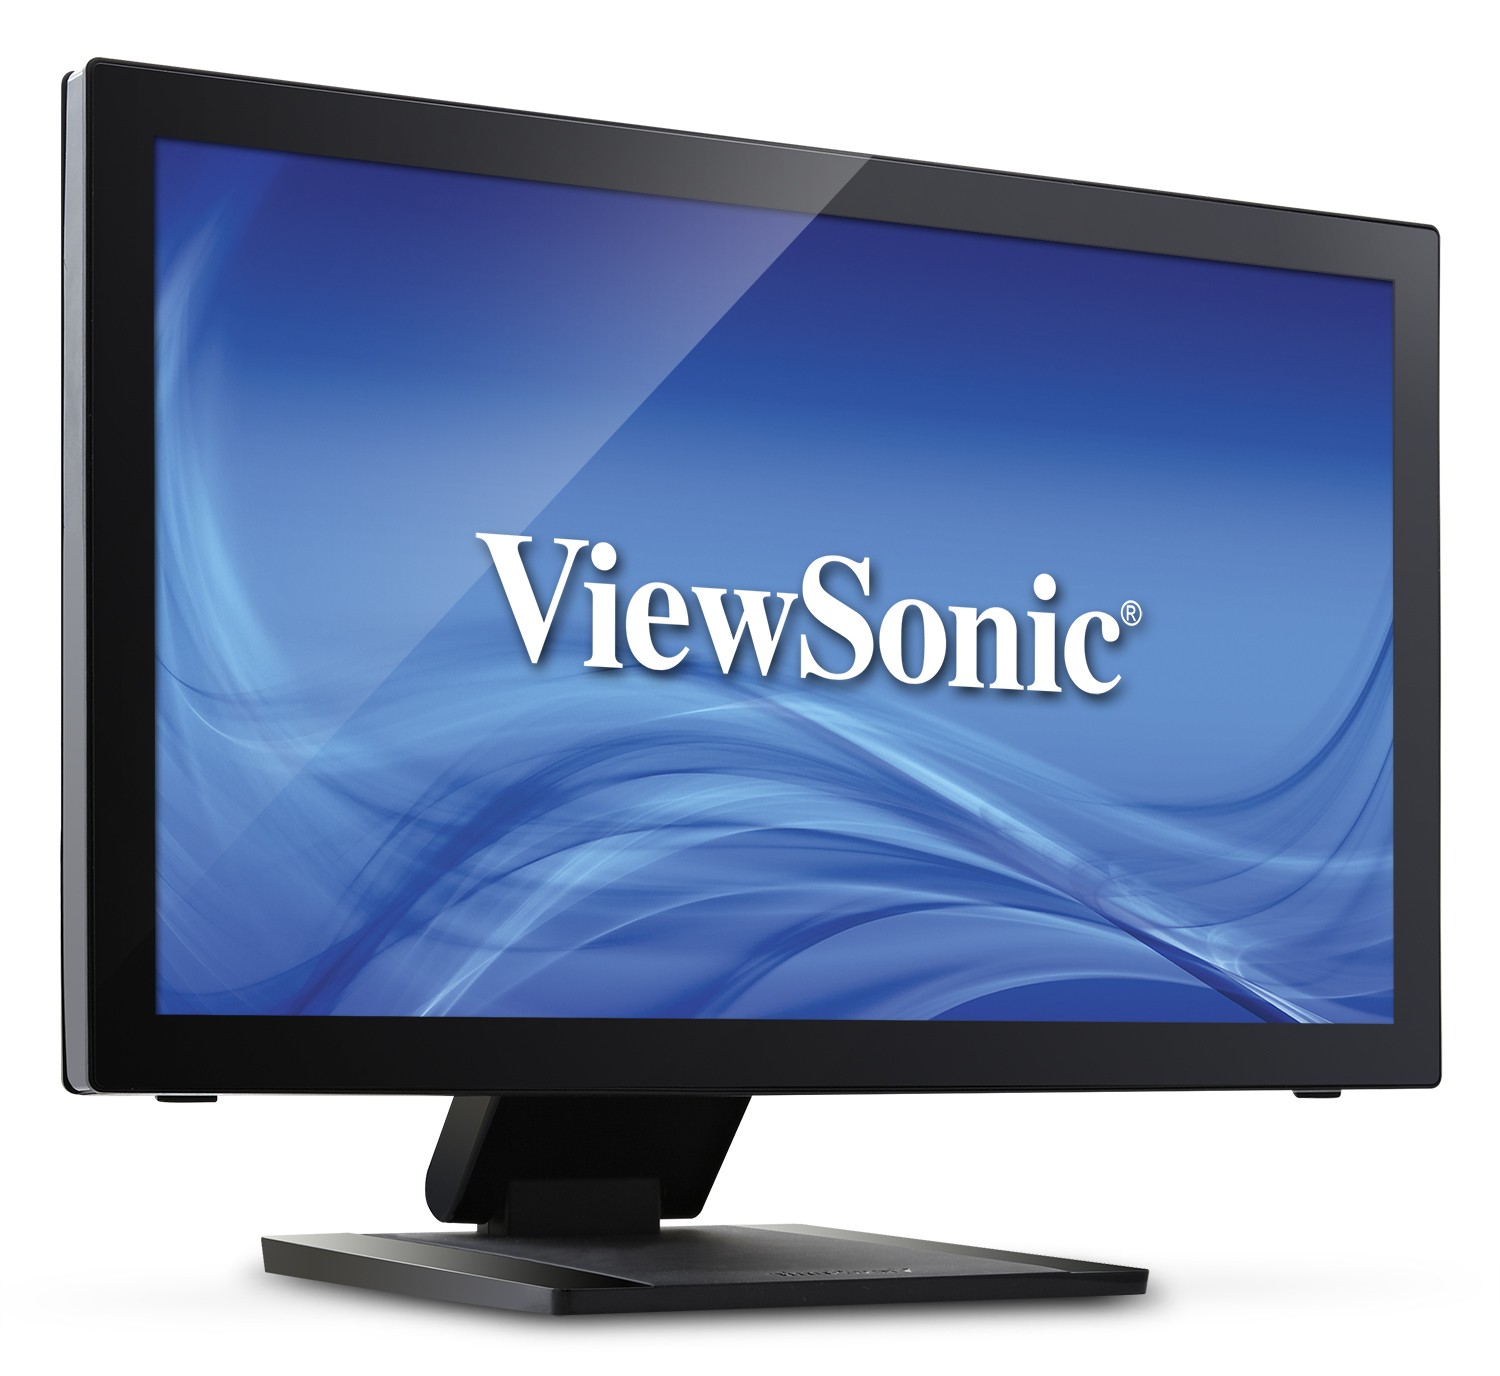 Immagine pubblicata in relazione al seguente contenuto: ViewSonic annuncia il monitor multi-touch a 10 punti TD2240 | Nome immagine: news20782_ViewSonic-TD2240_2.jpg